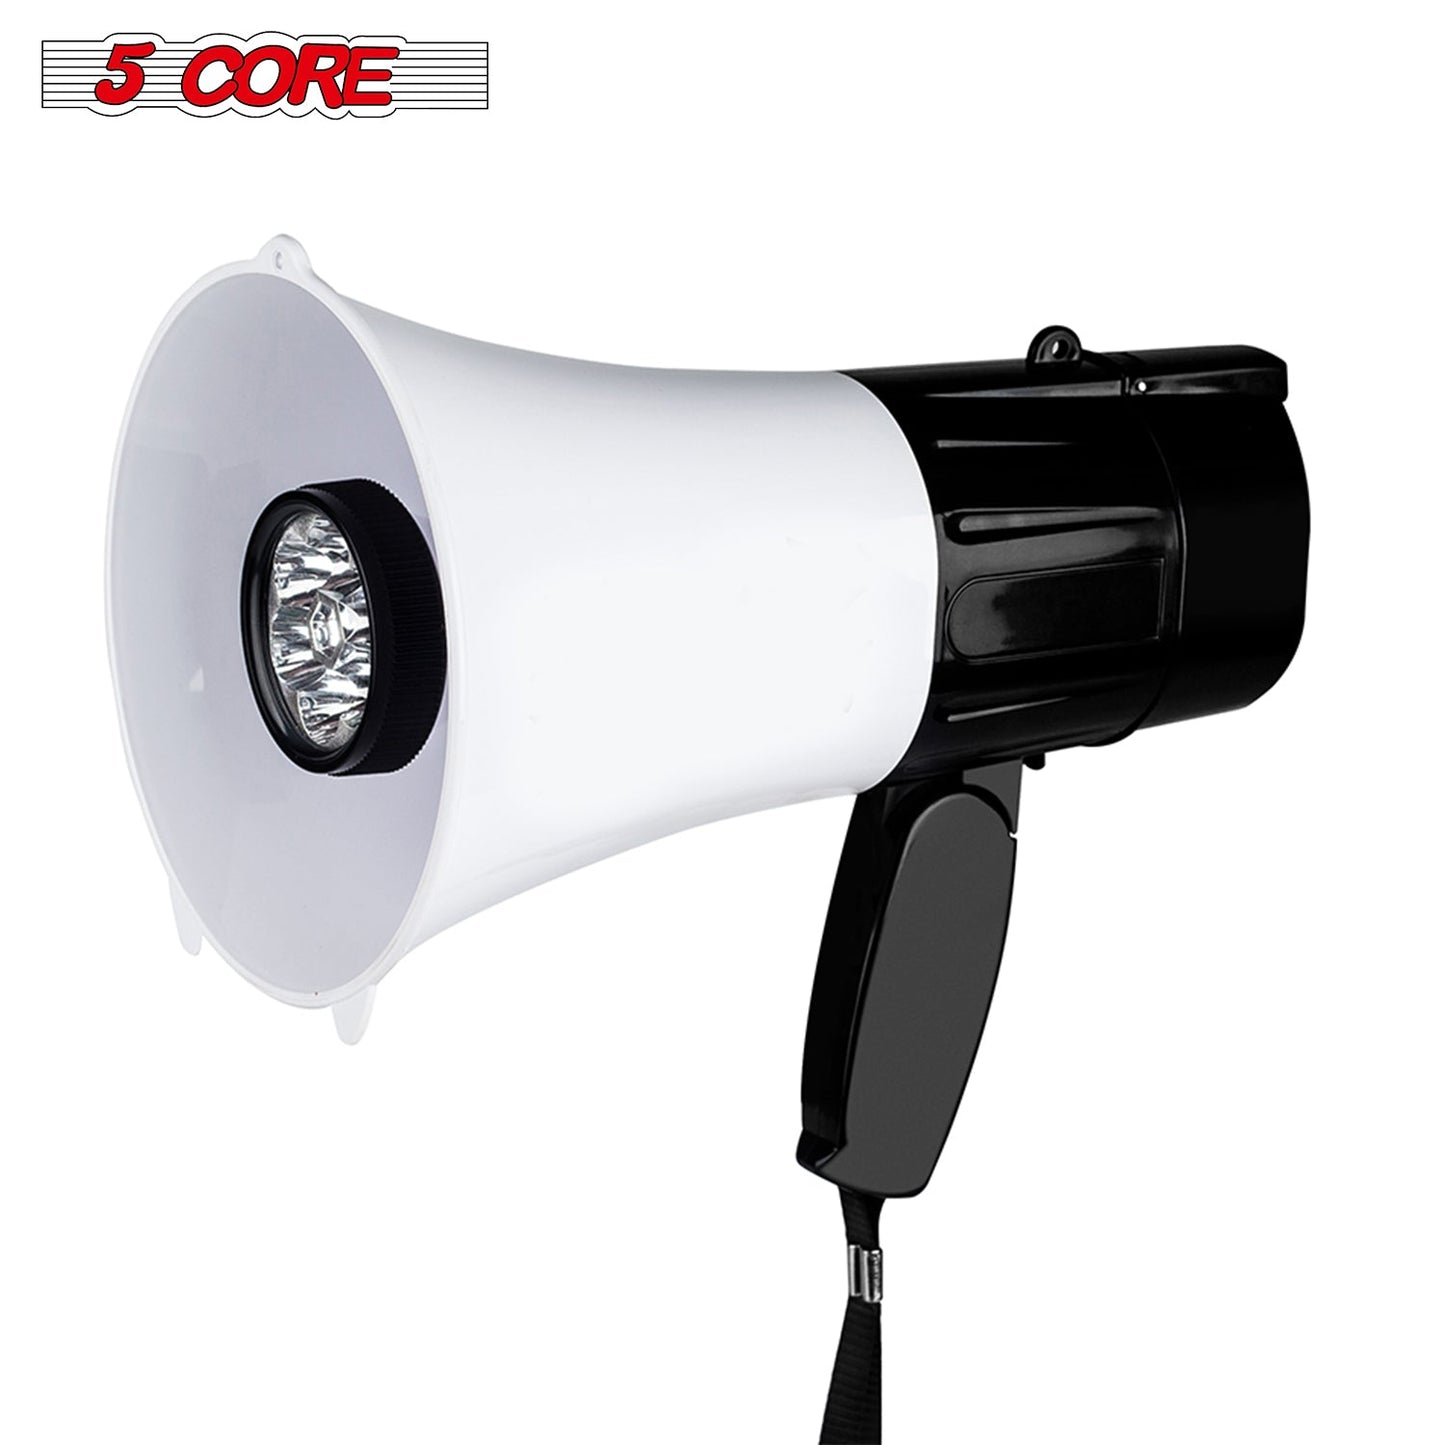 Megaphone Handheld with LED lights Bullhorn Cheer Loudspeaker Bull Horn Speaker 148 LED